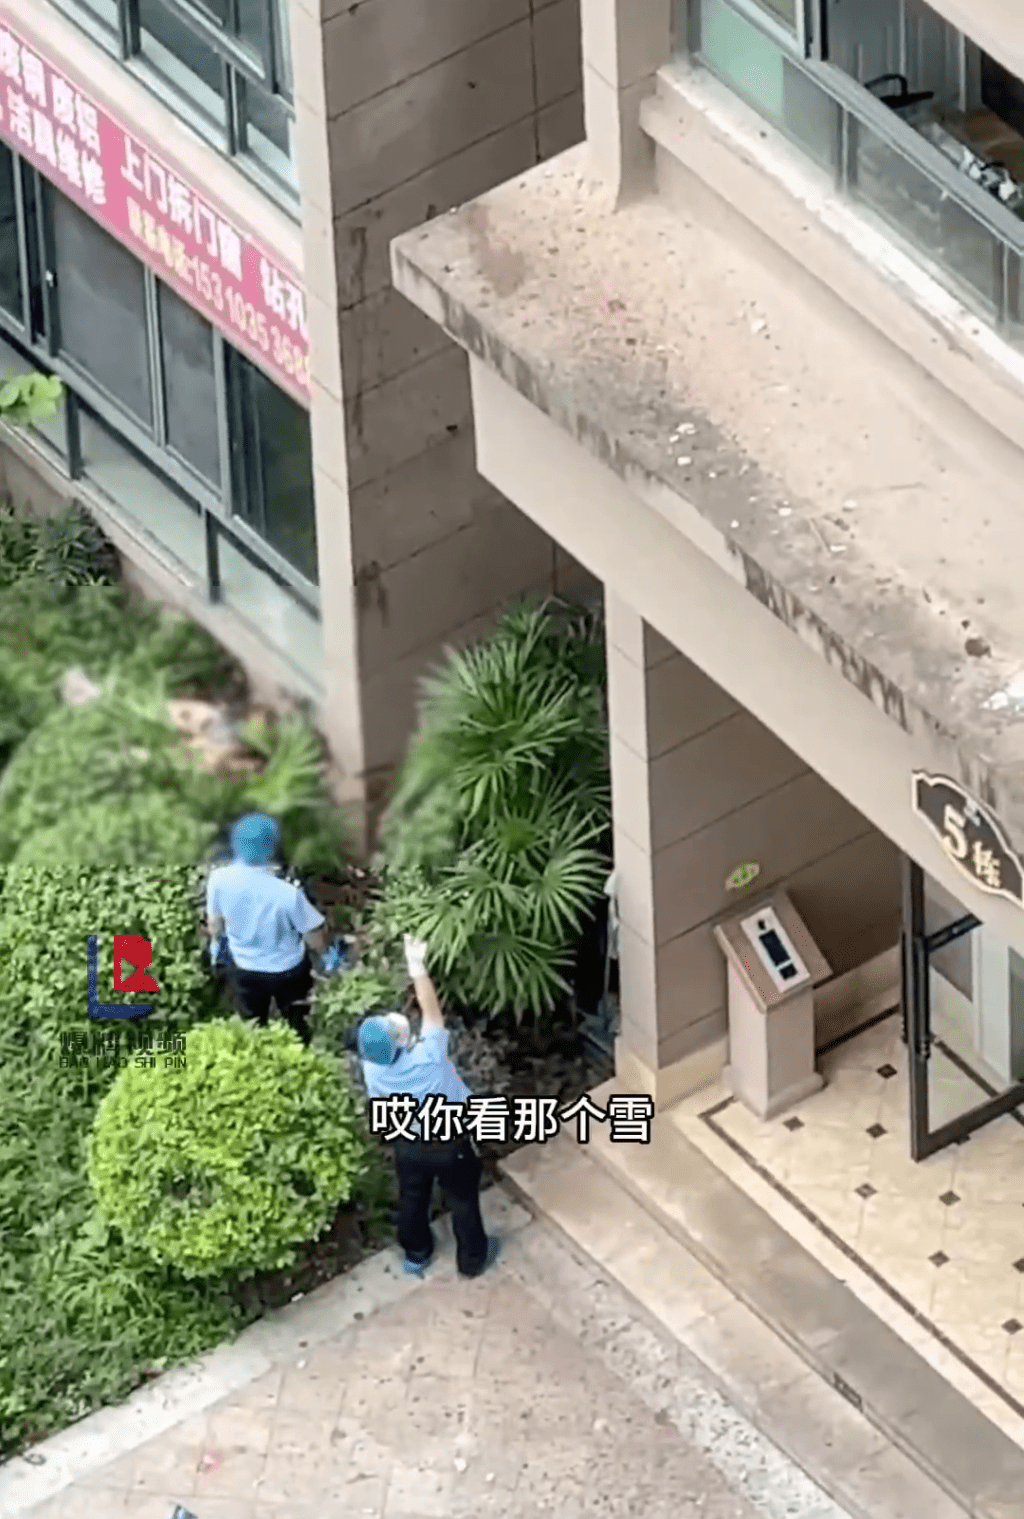 警方懷疑死者墮樓時，撞上牆樑致屍首分離。